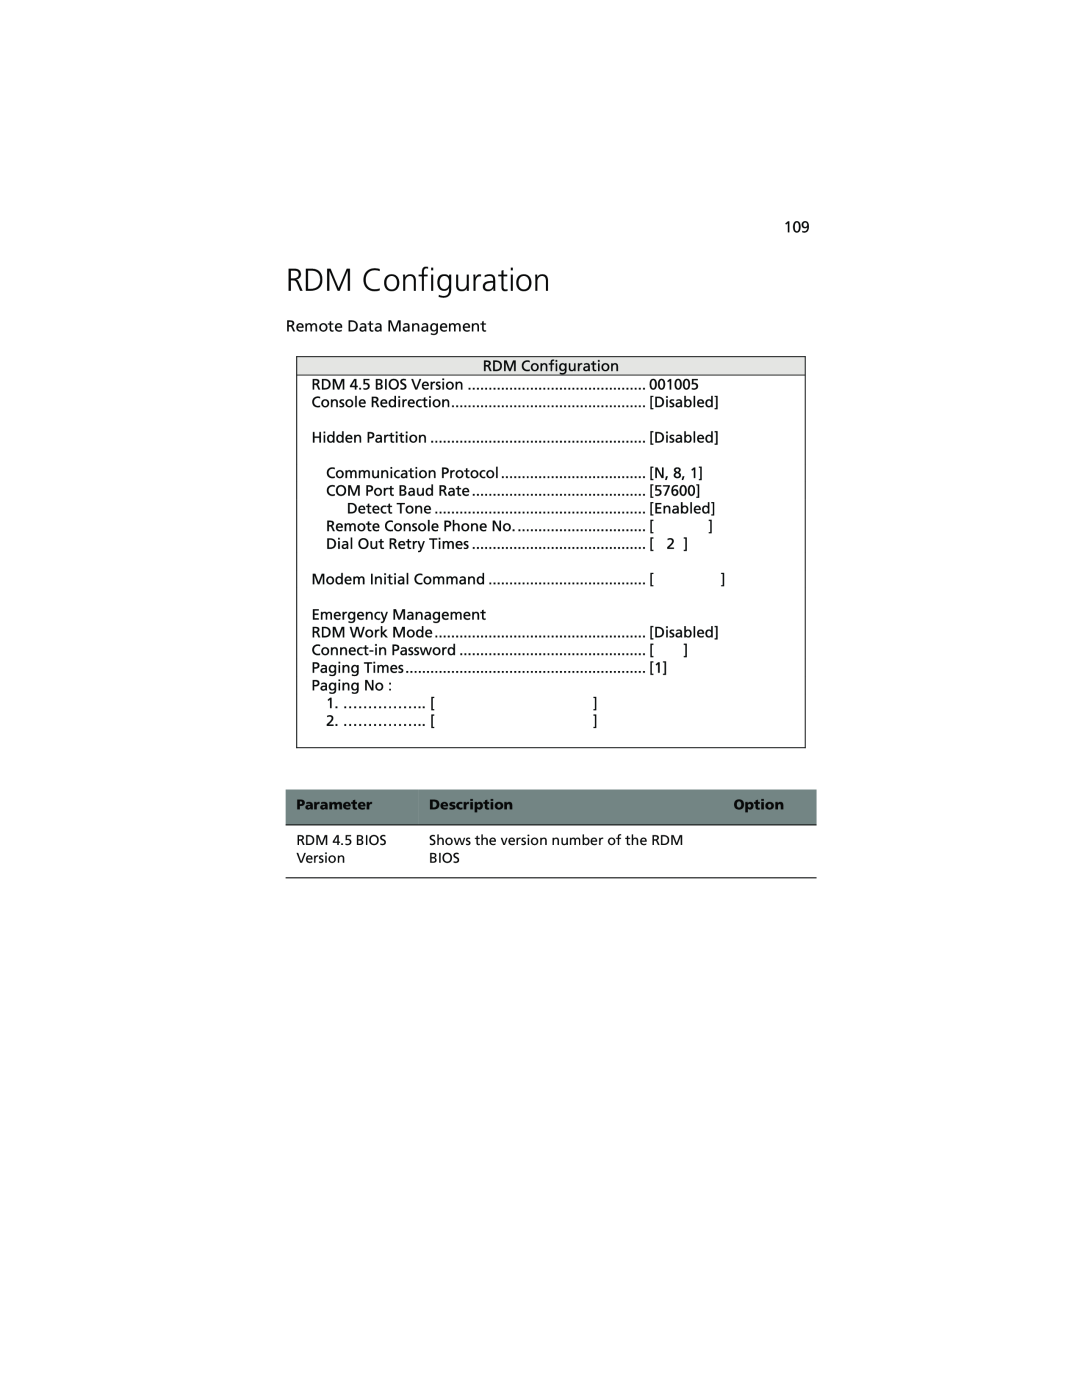 Acer Altos G610 manual RDM Configuration, Remote Data Management 